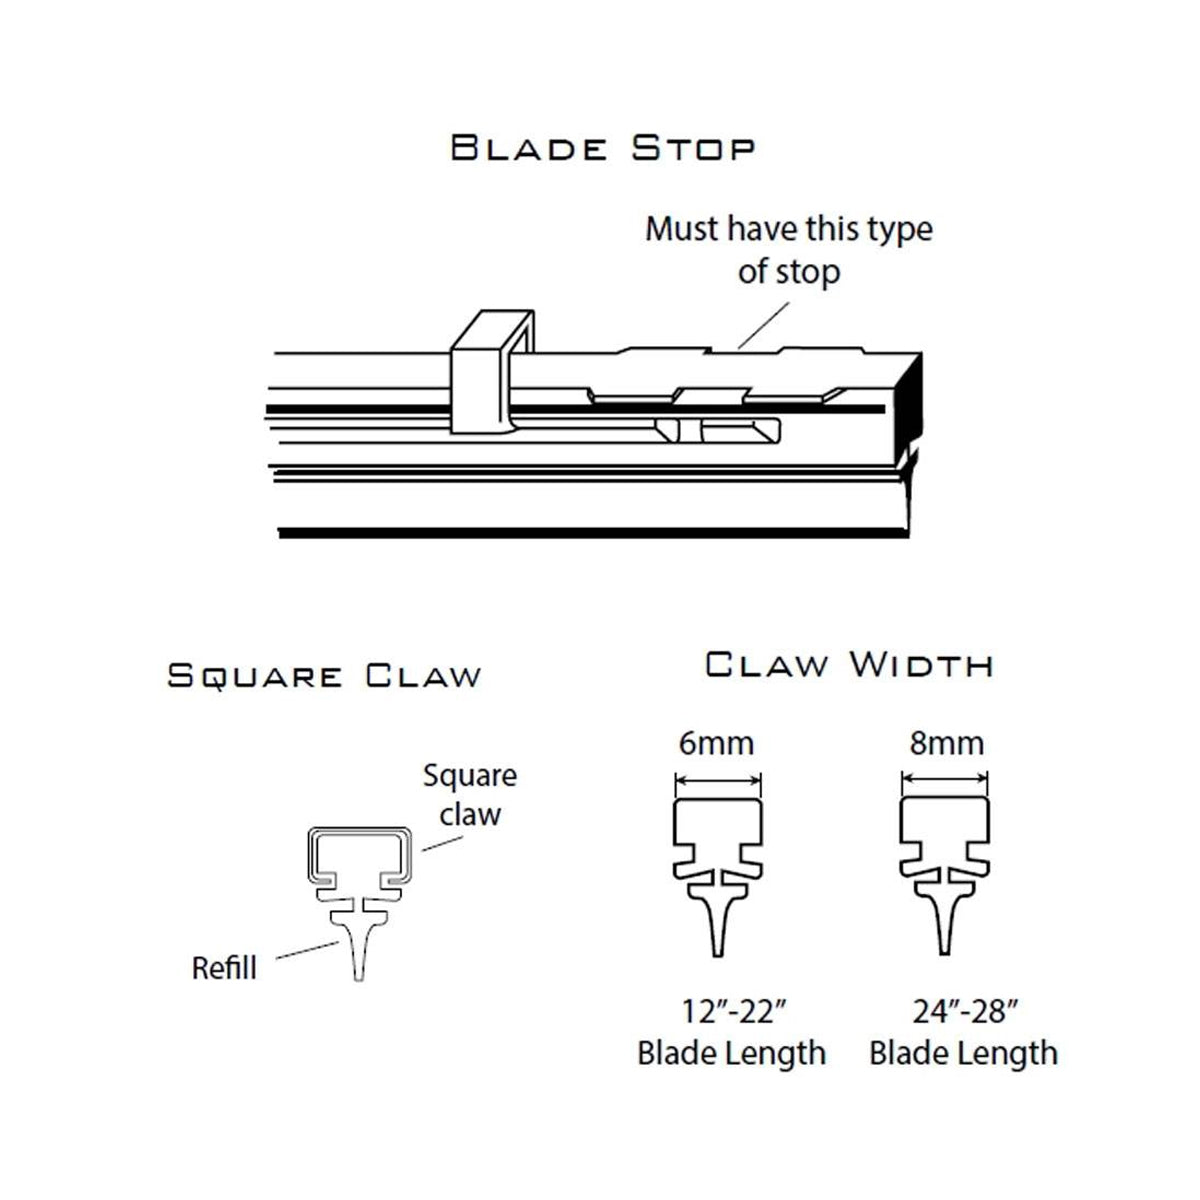 PIAA SILICONE WIPER REFILL for Radix & Aero Vogue Blade ( 20" ) ( 6mm ) (Barcode: 722935940502 )